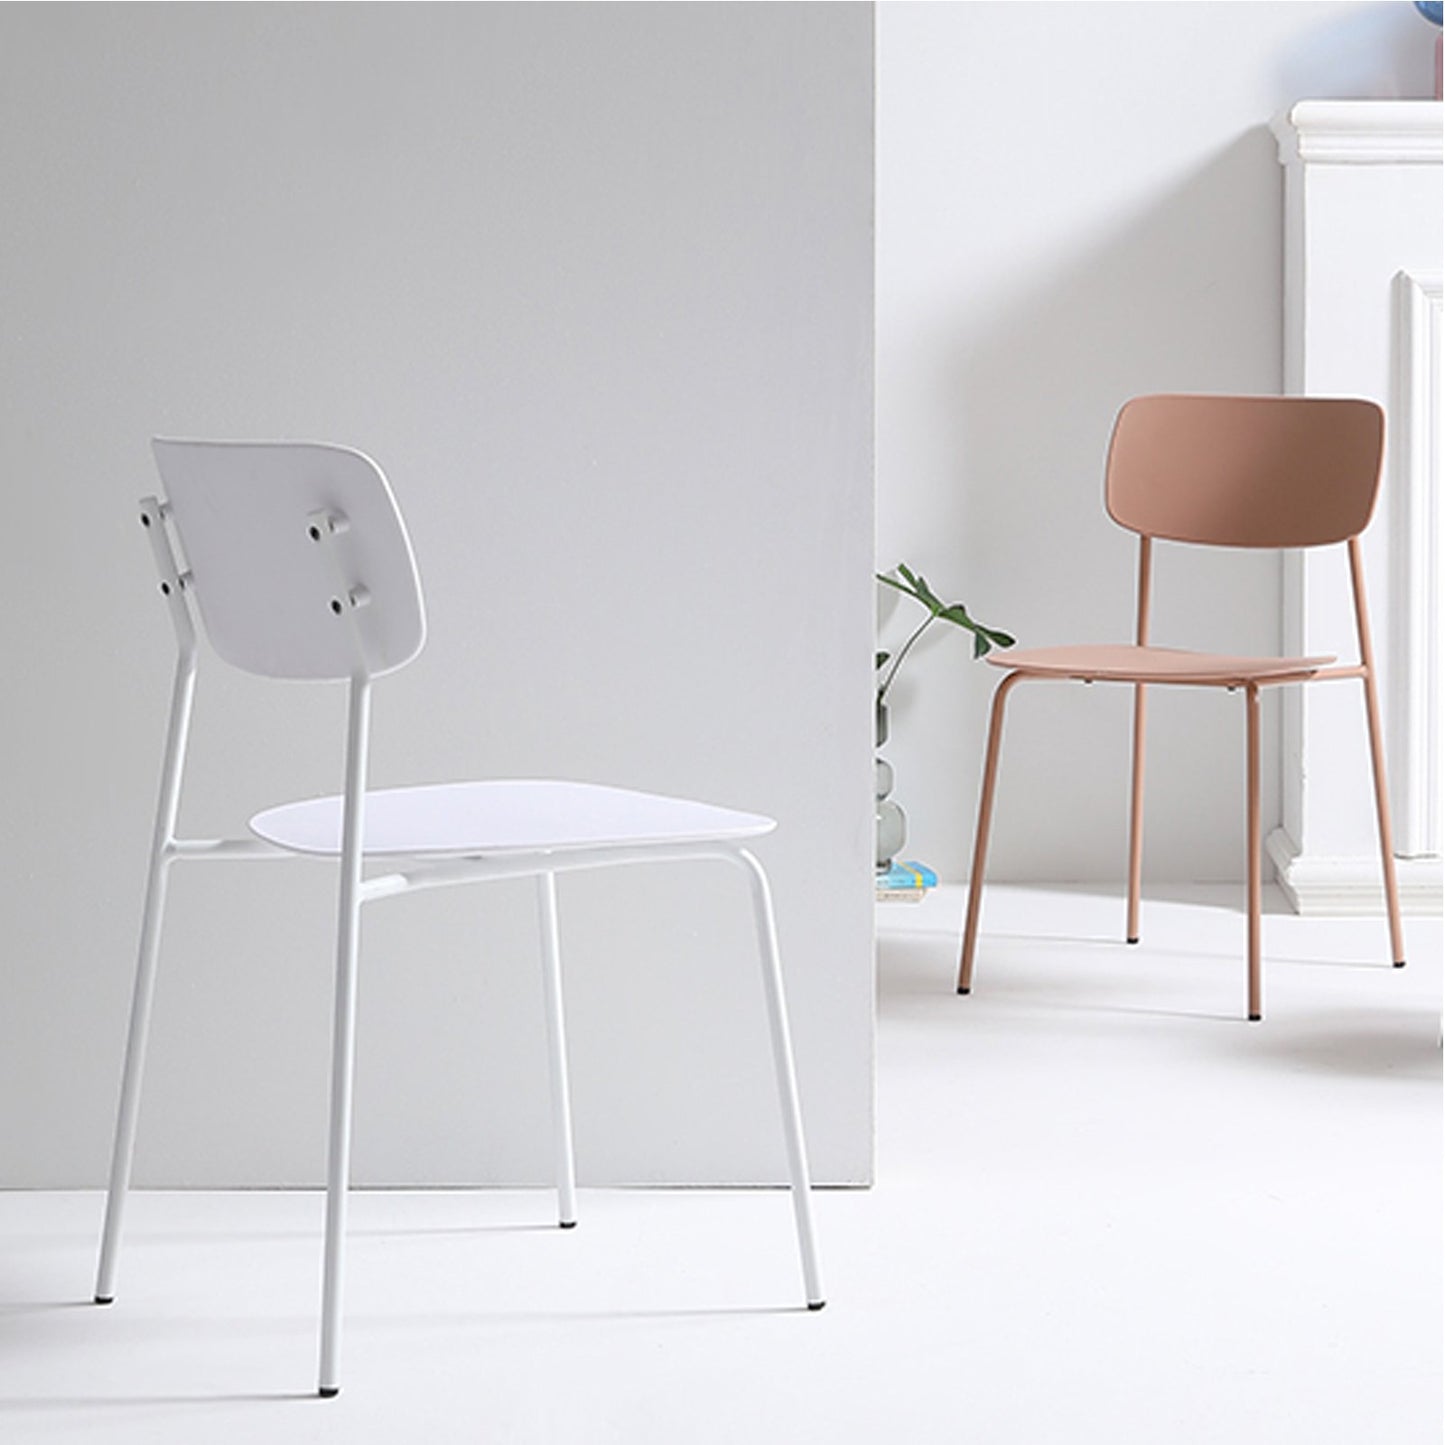 Chaise scandinave au design minimaliste coloris blanc